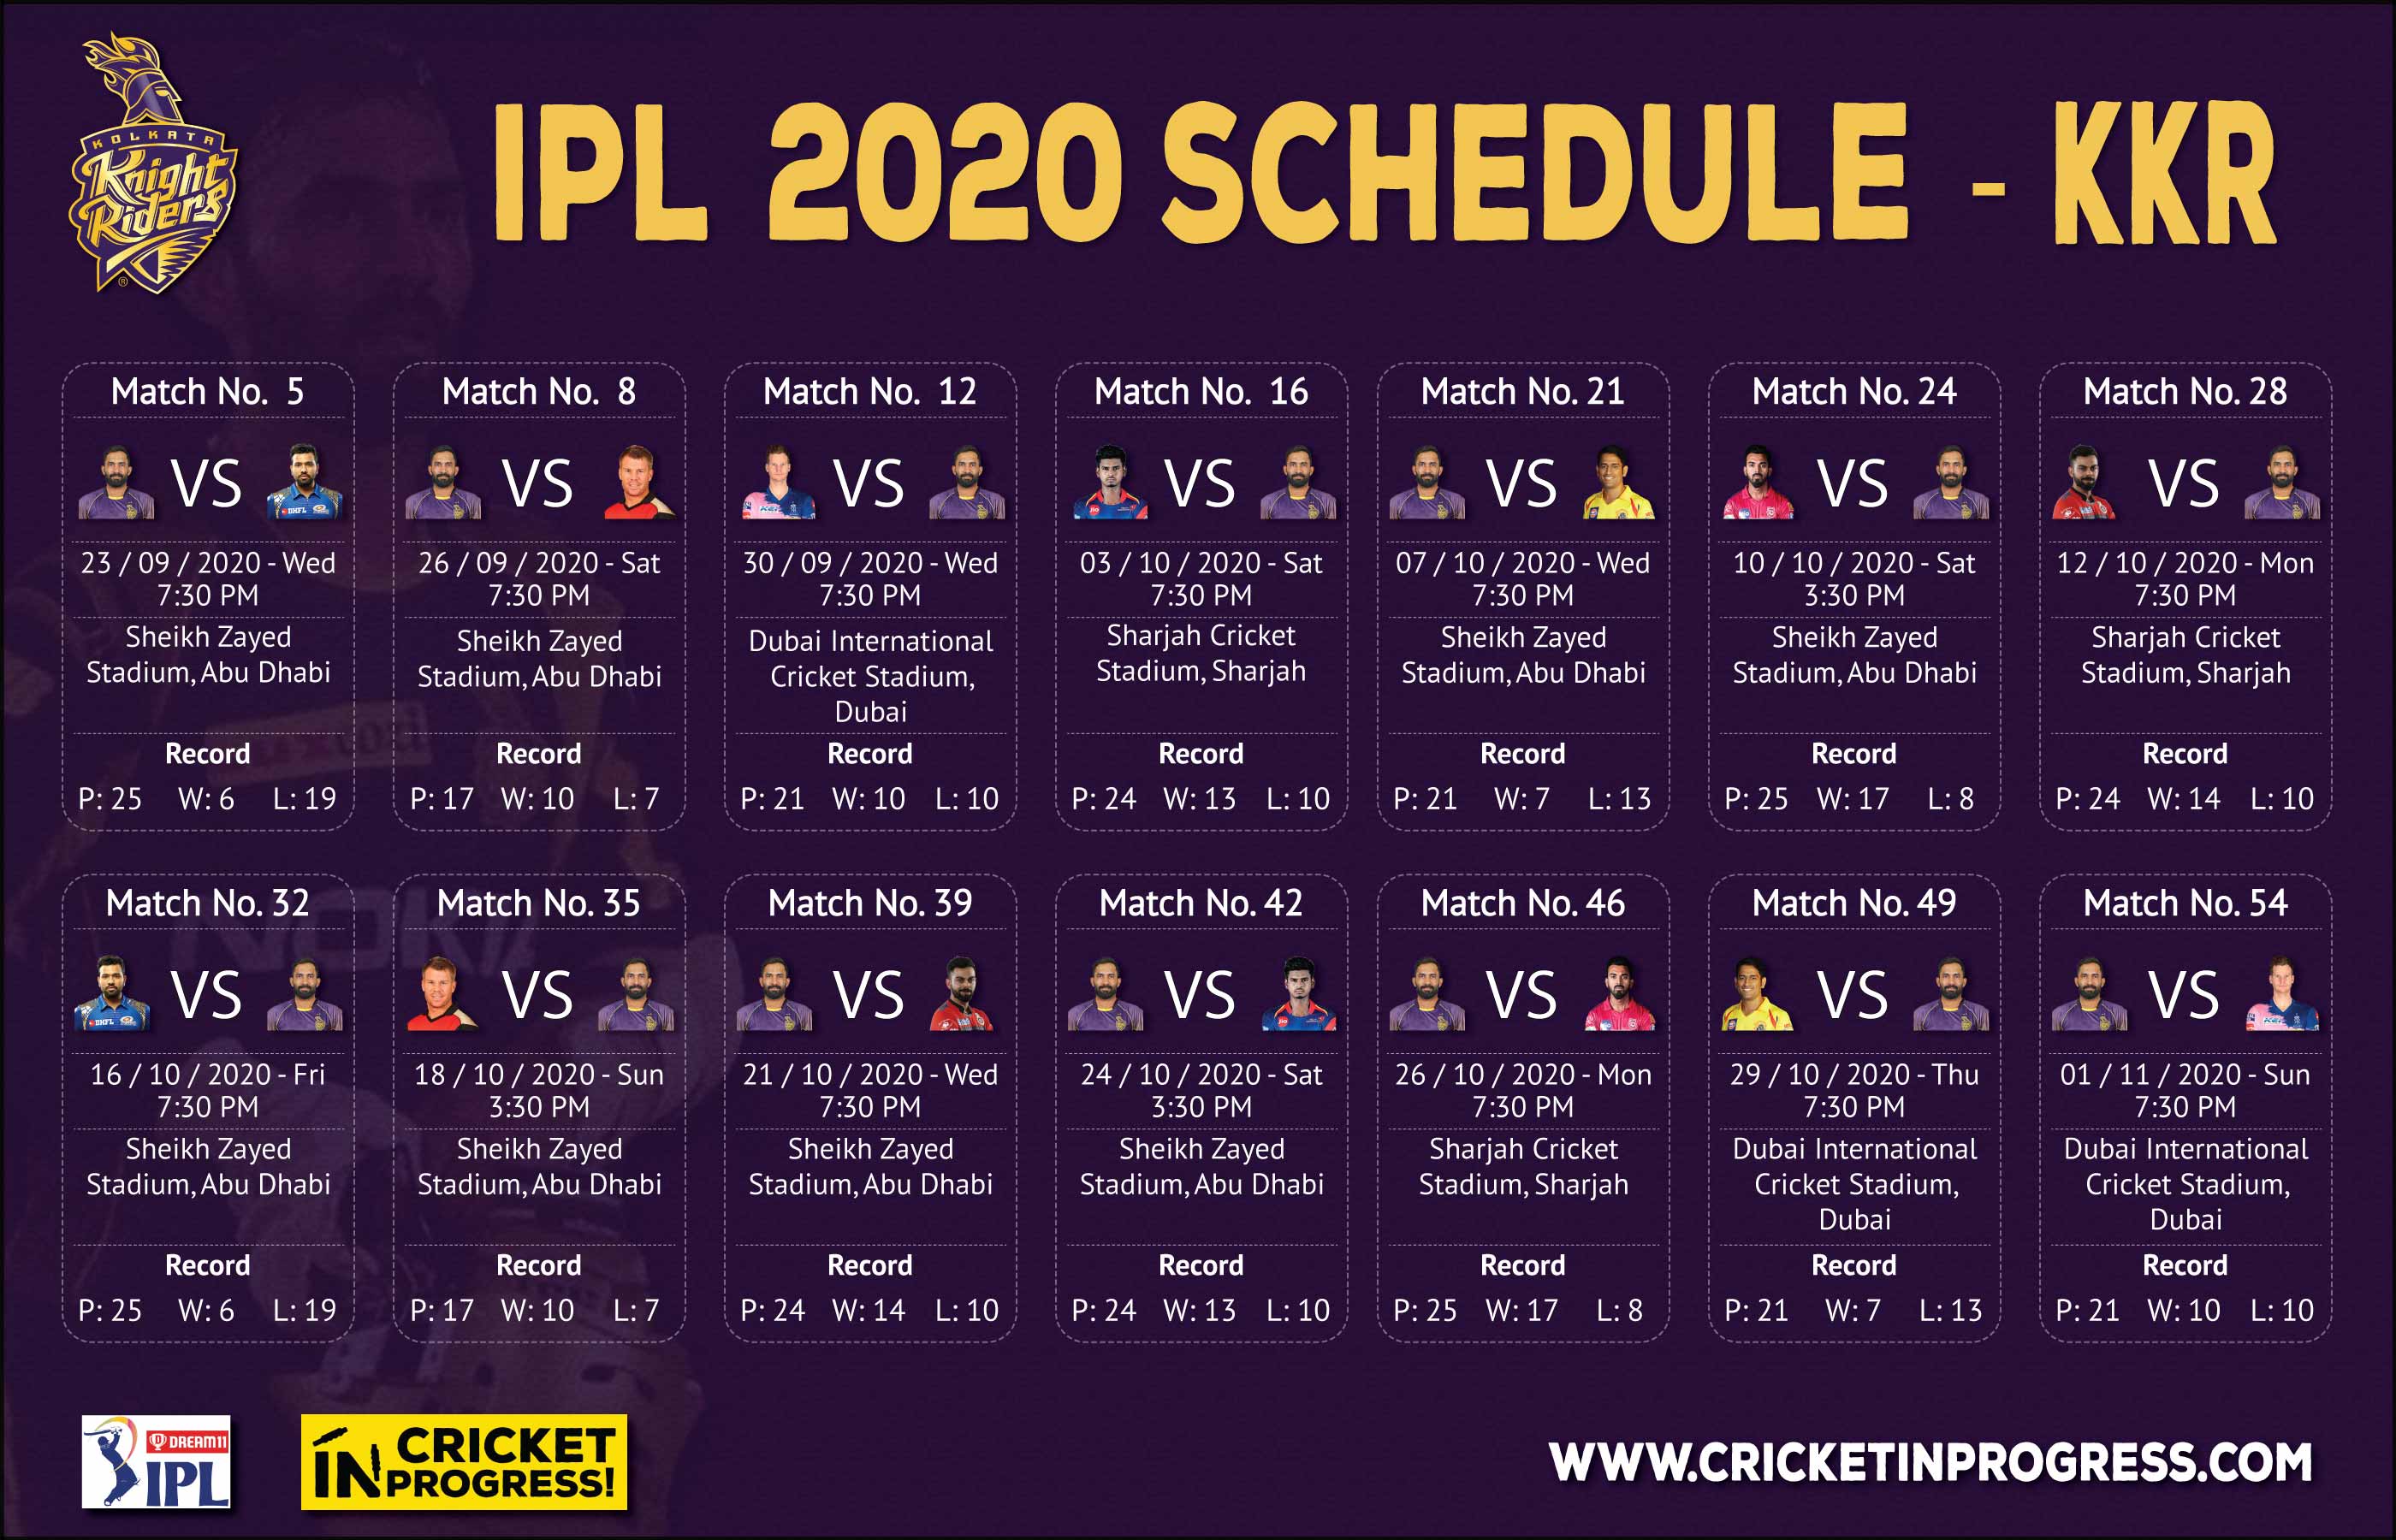 IPL 2020 KKR Schedule